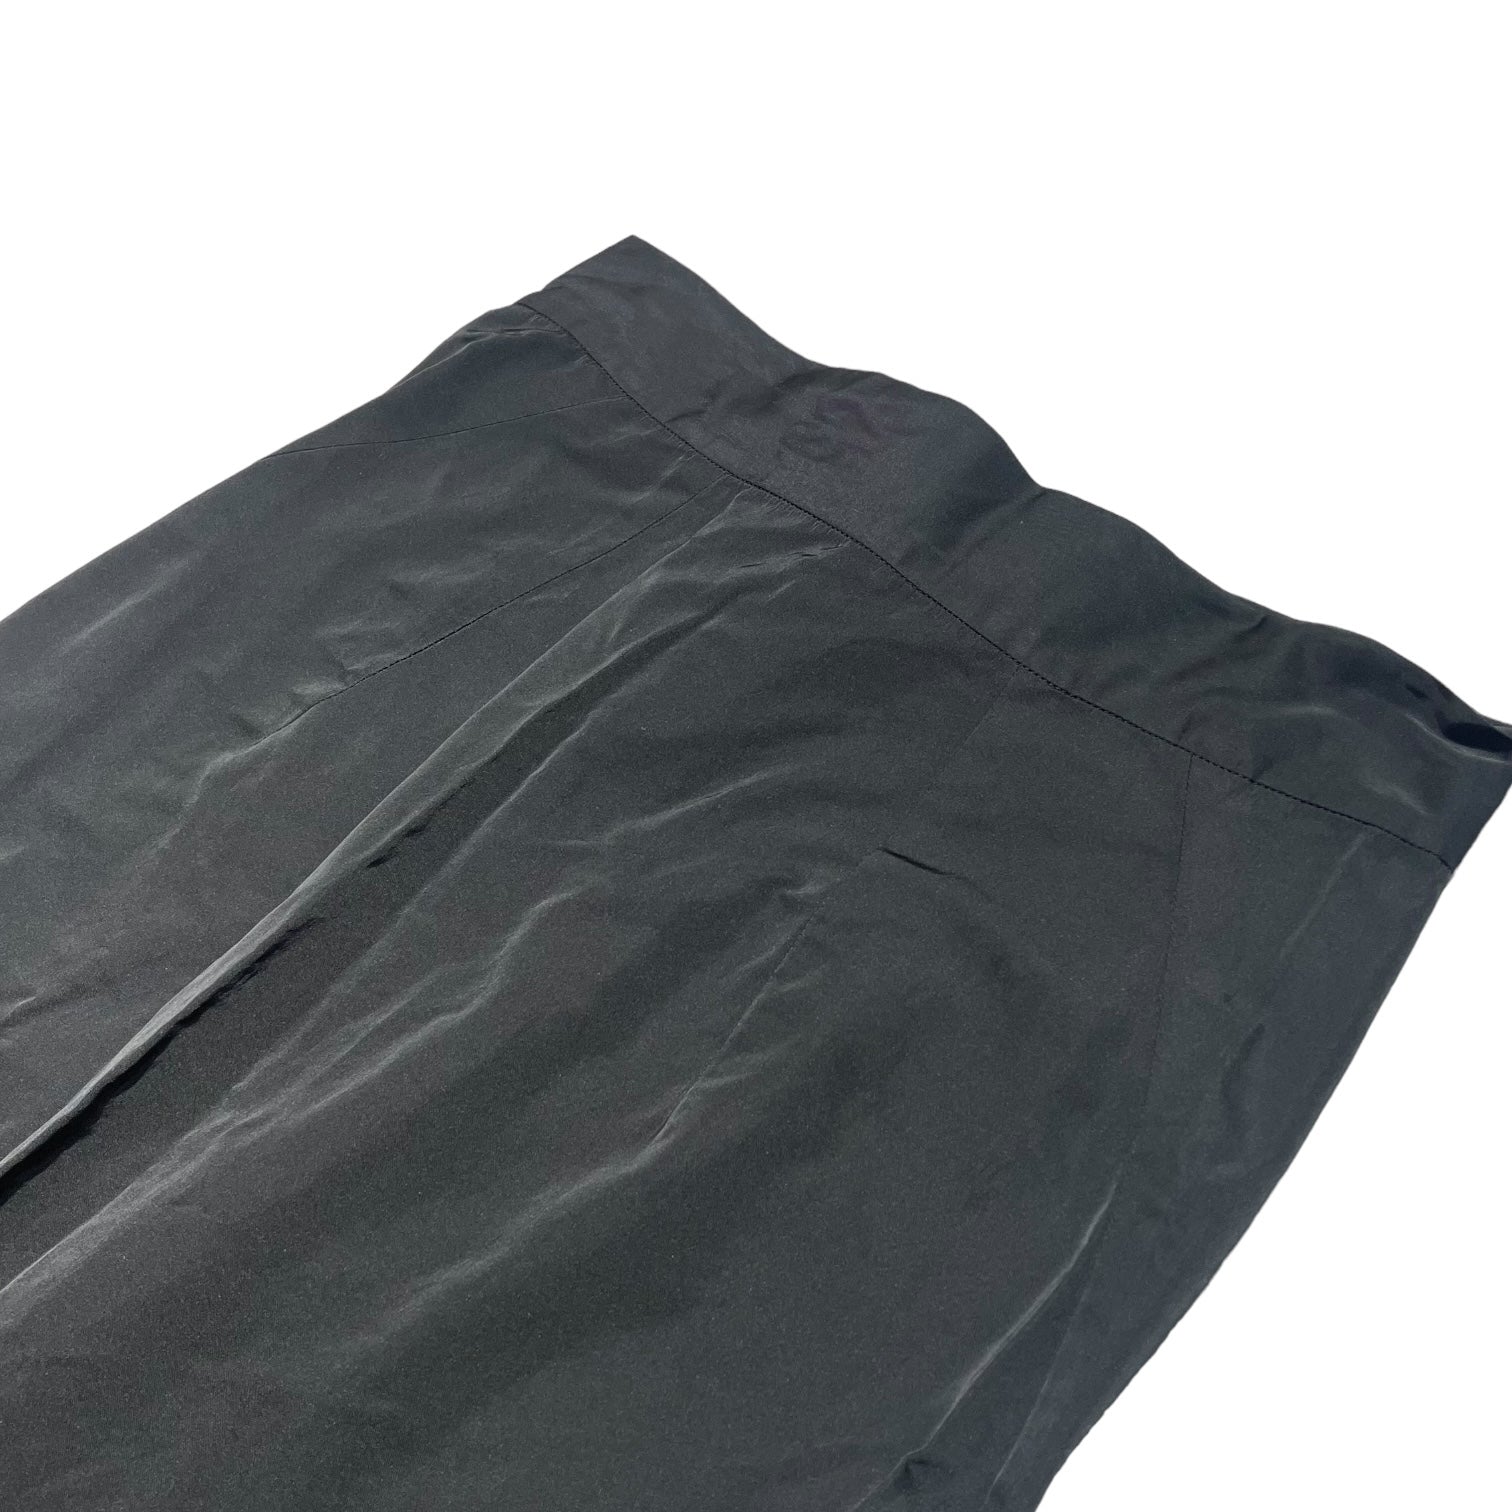 JIL SANDER(ジルサンダー) maxi skirt マキシ スカート 36(S程度) ブラック ロング リボン ポケット